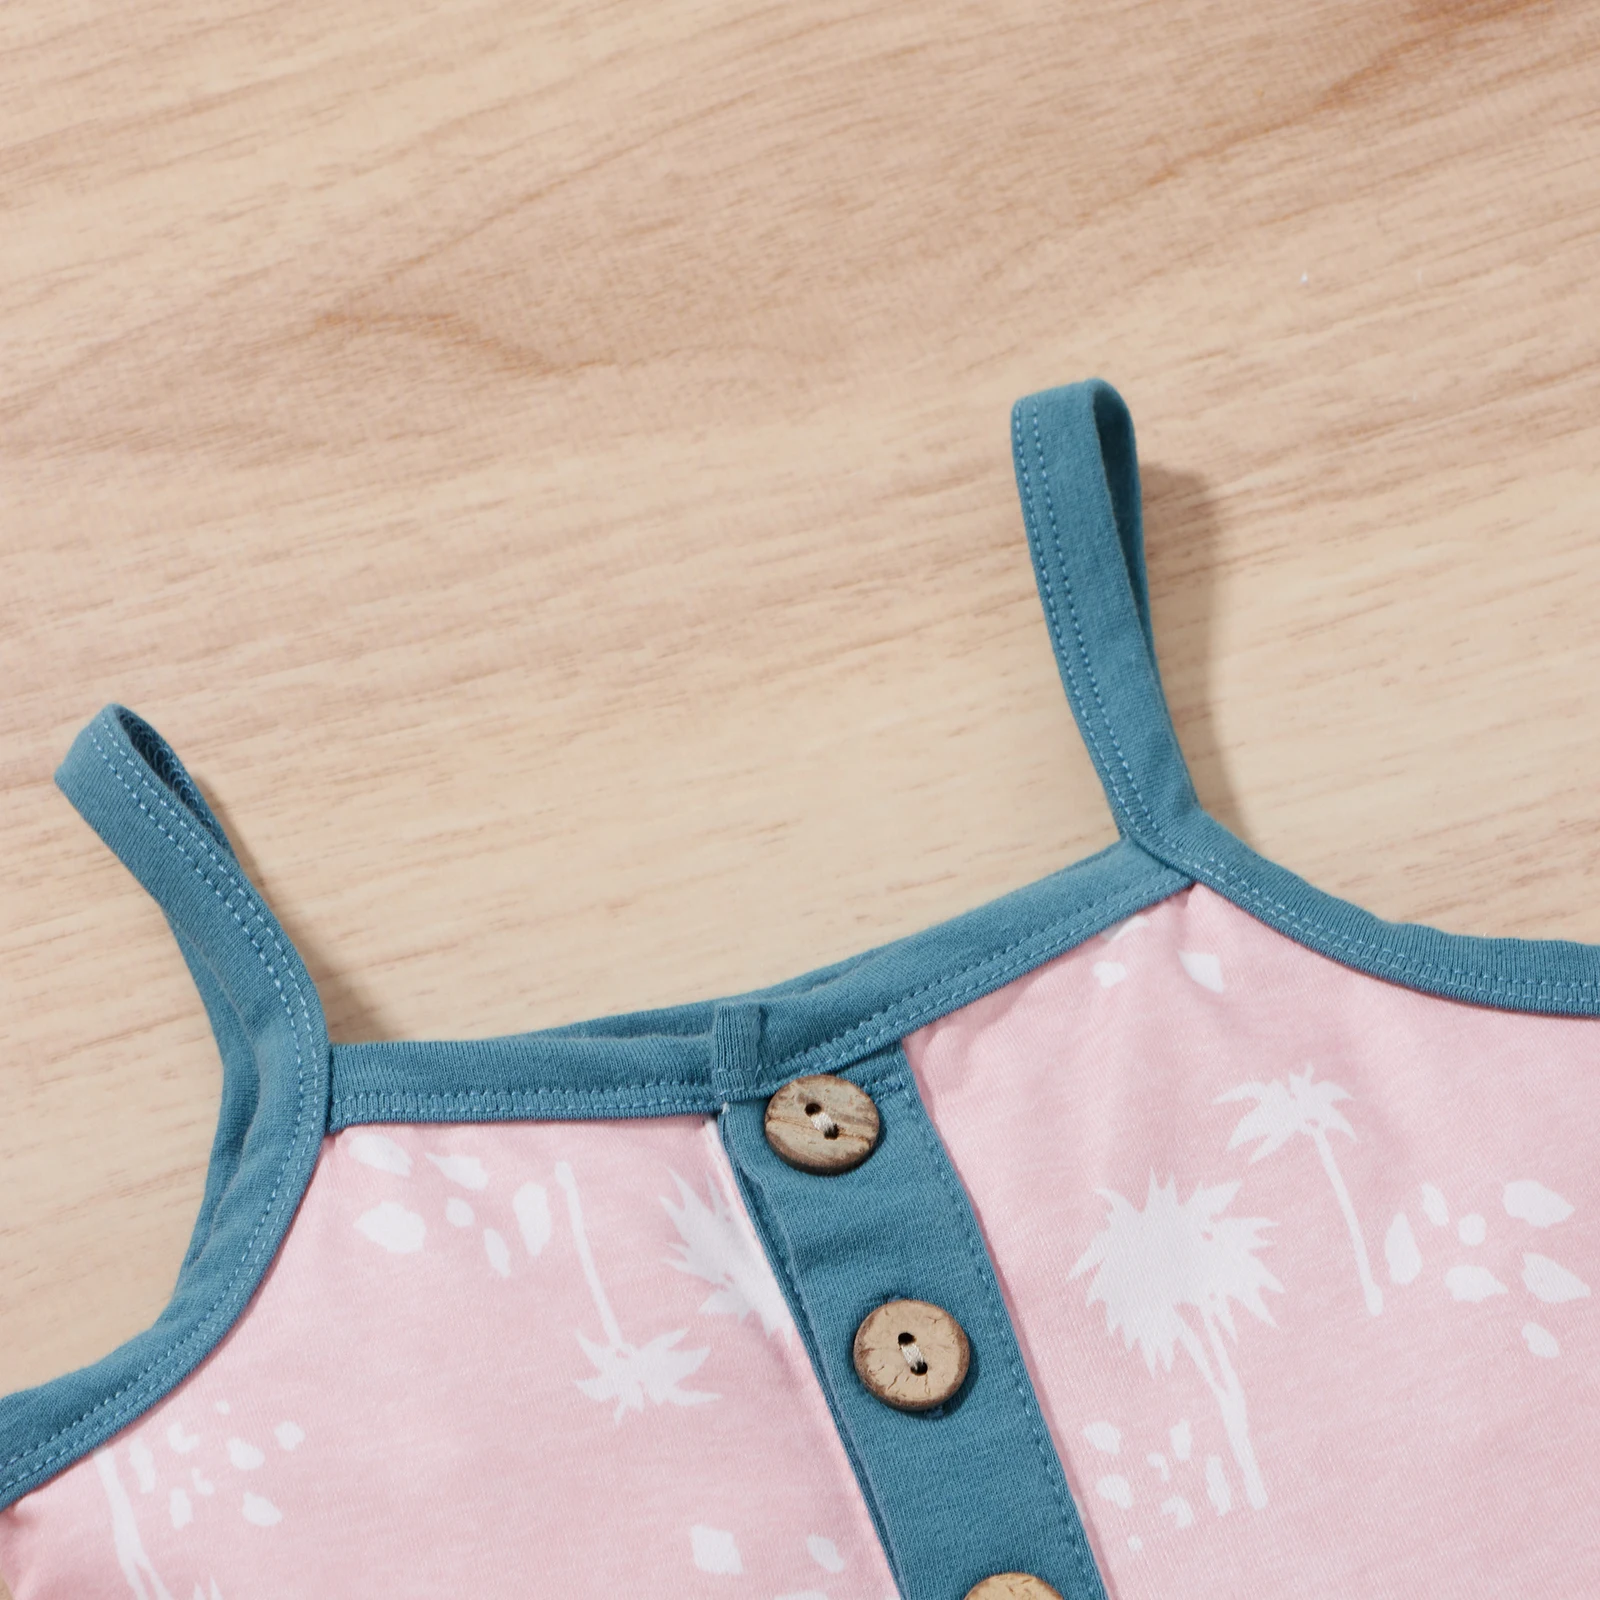 Летняя одежда из 2 предметов для маленьких девочек, топы на пуговицах с рисунком дерева и без рукавов + комплект шорт